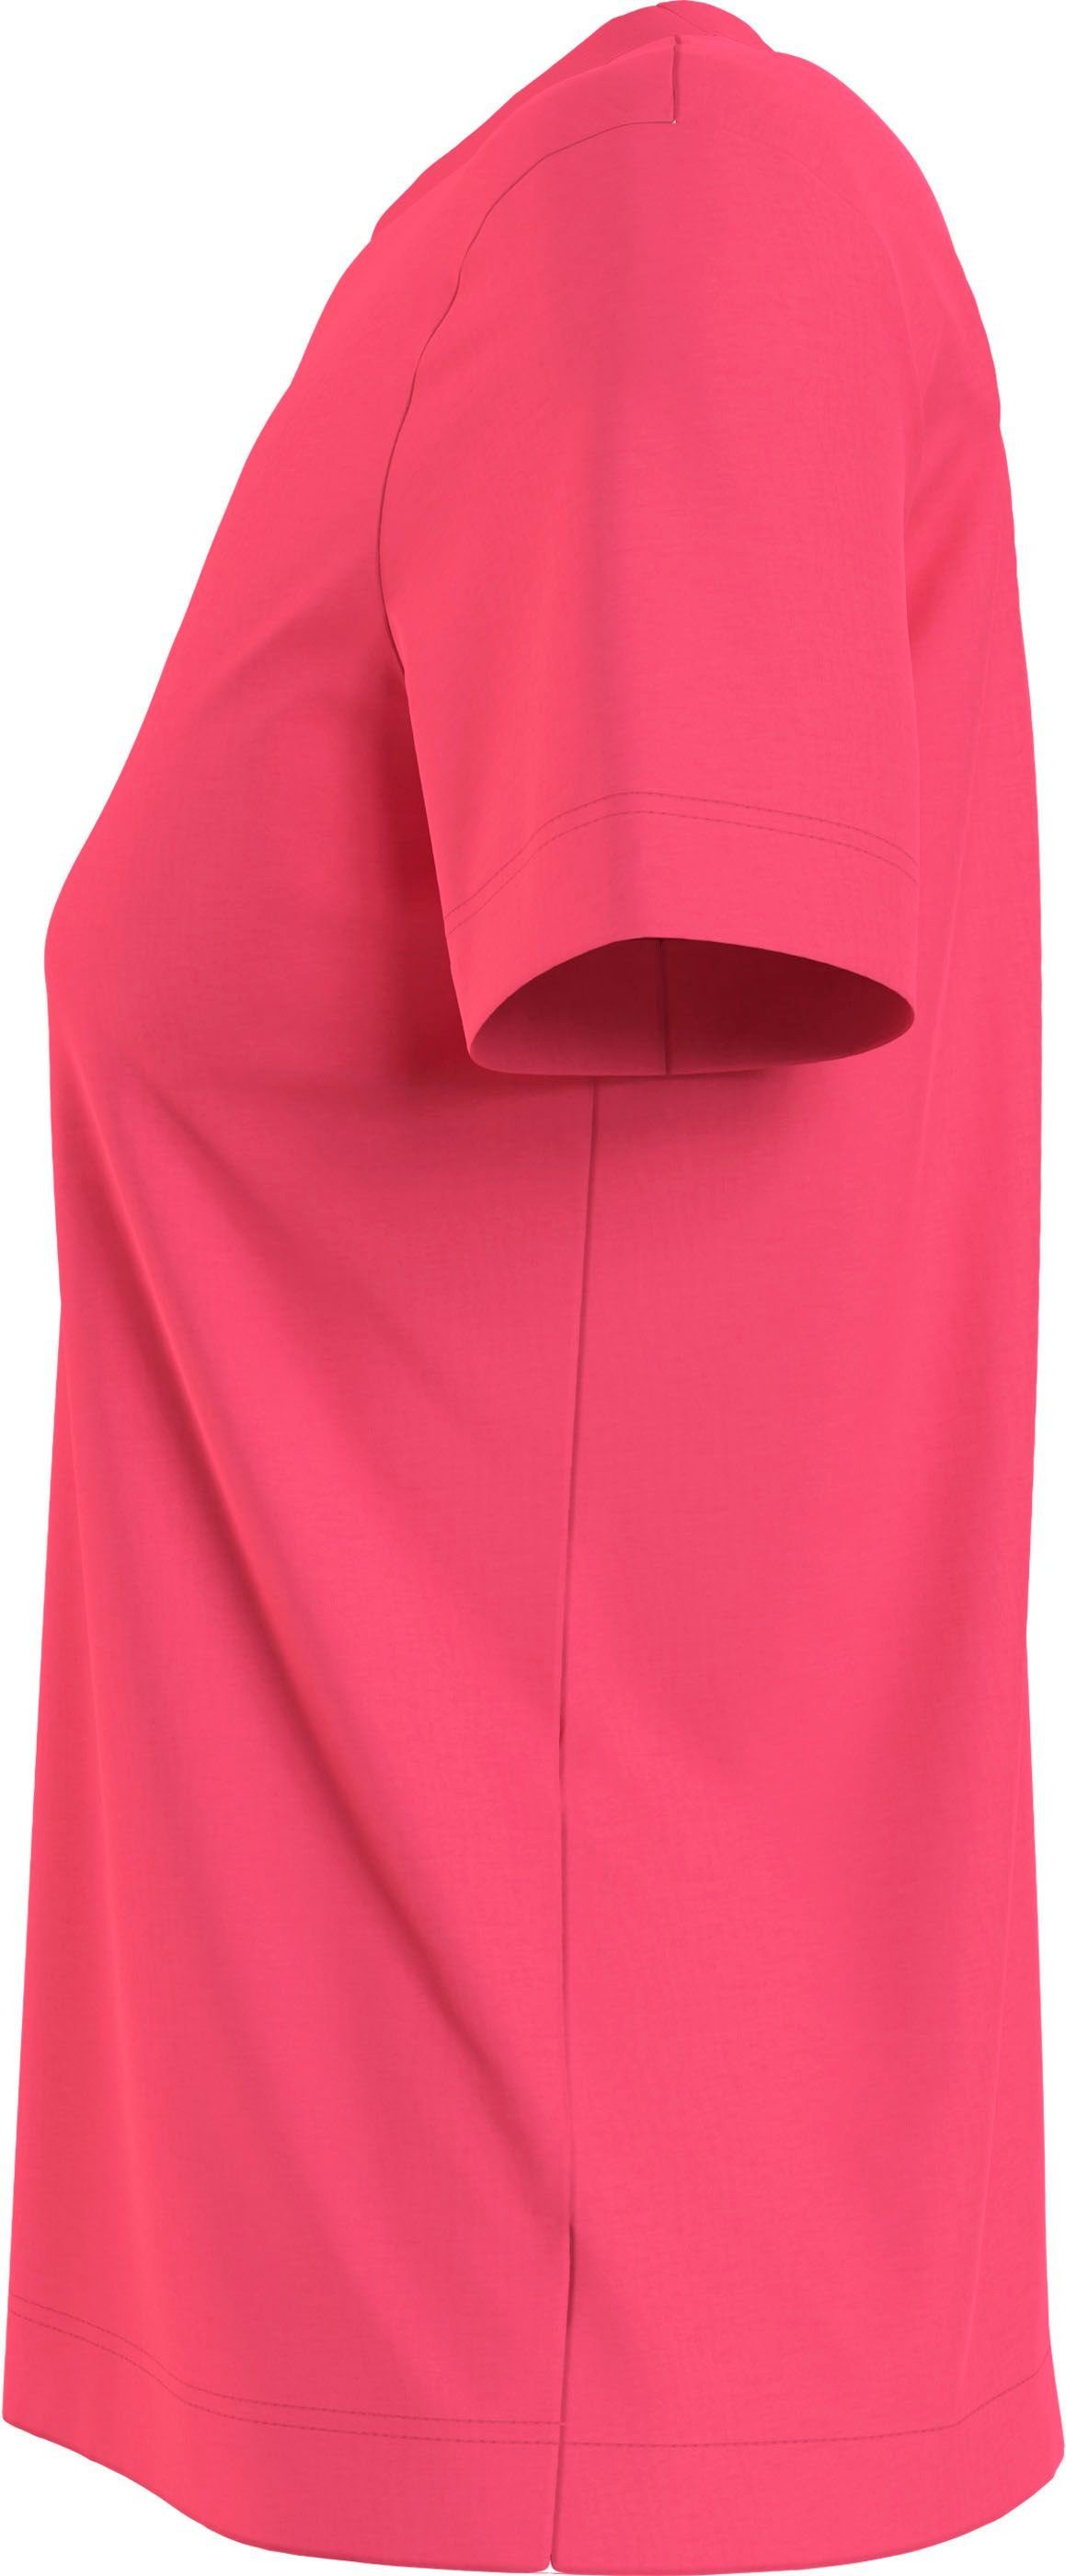 Jeans Baumwolle aus reiner Calvin T-Shirt pink Klein